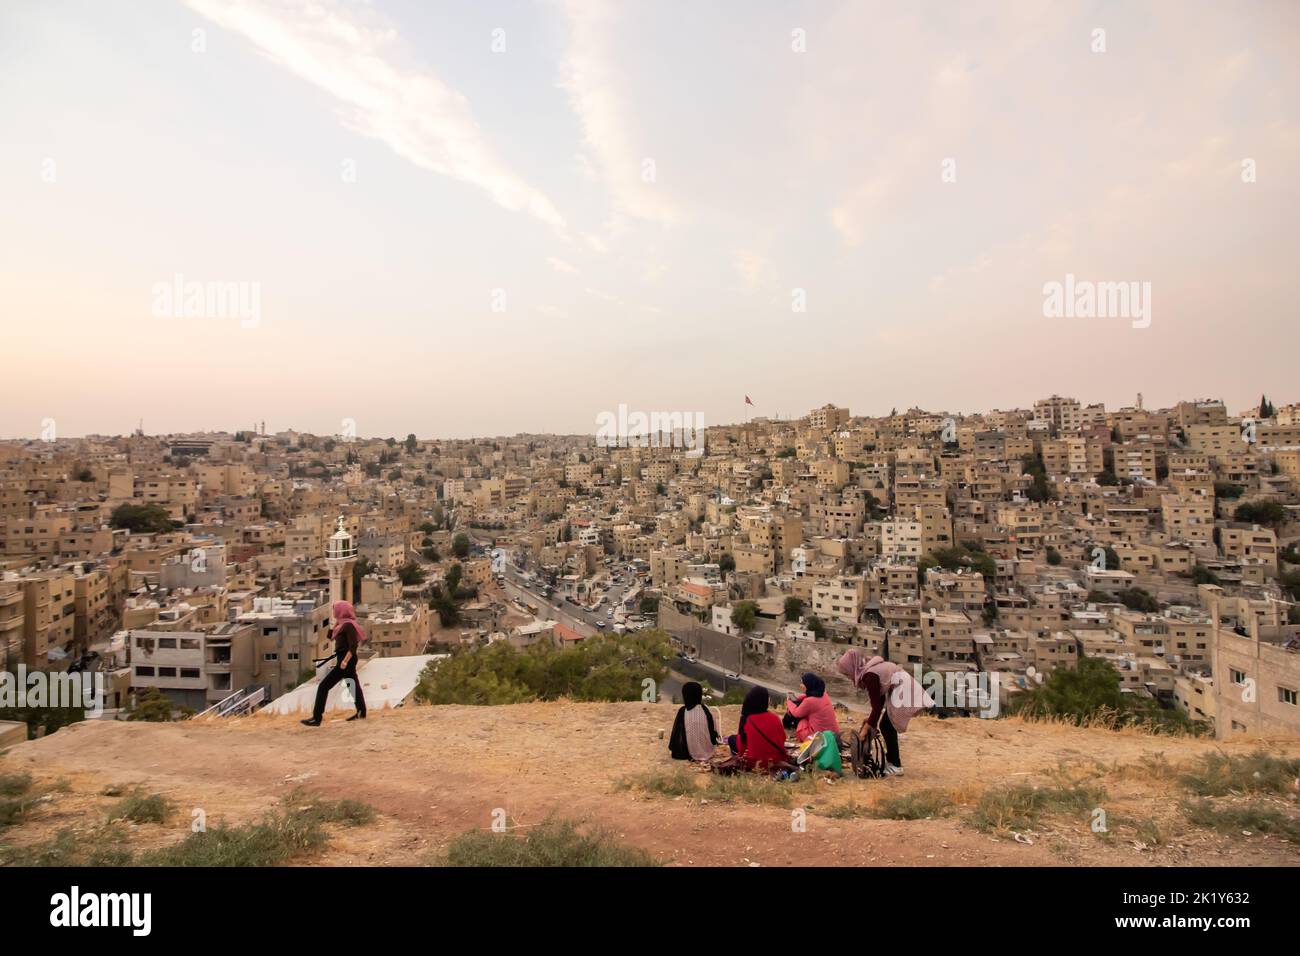 Amman, Jordanie - 13 septembre 2018: Un groupe de filles arabes au coucher du soleil se trouve près de la Citadelle, la plus haute partie d'Amman. Banque D'Images